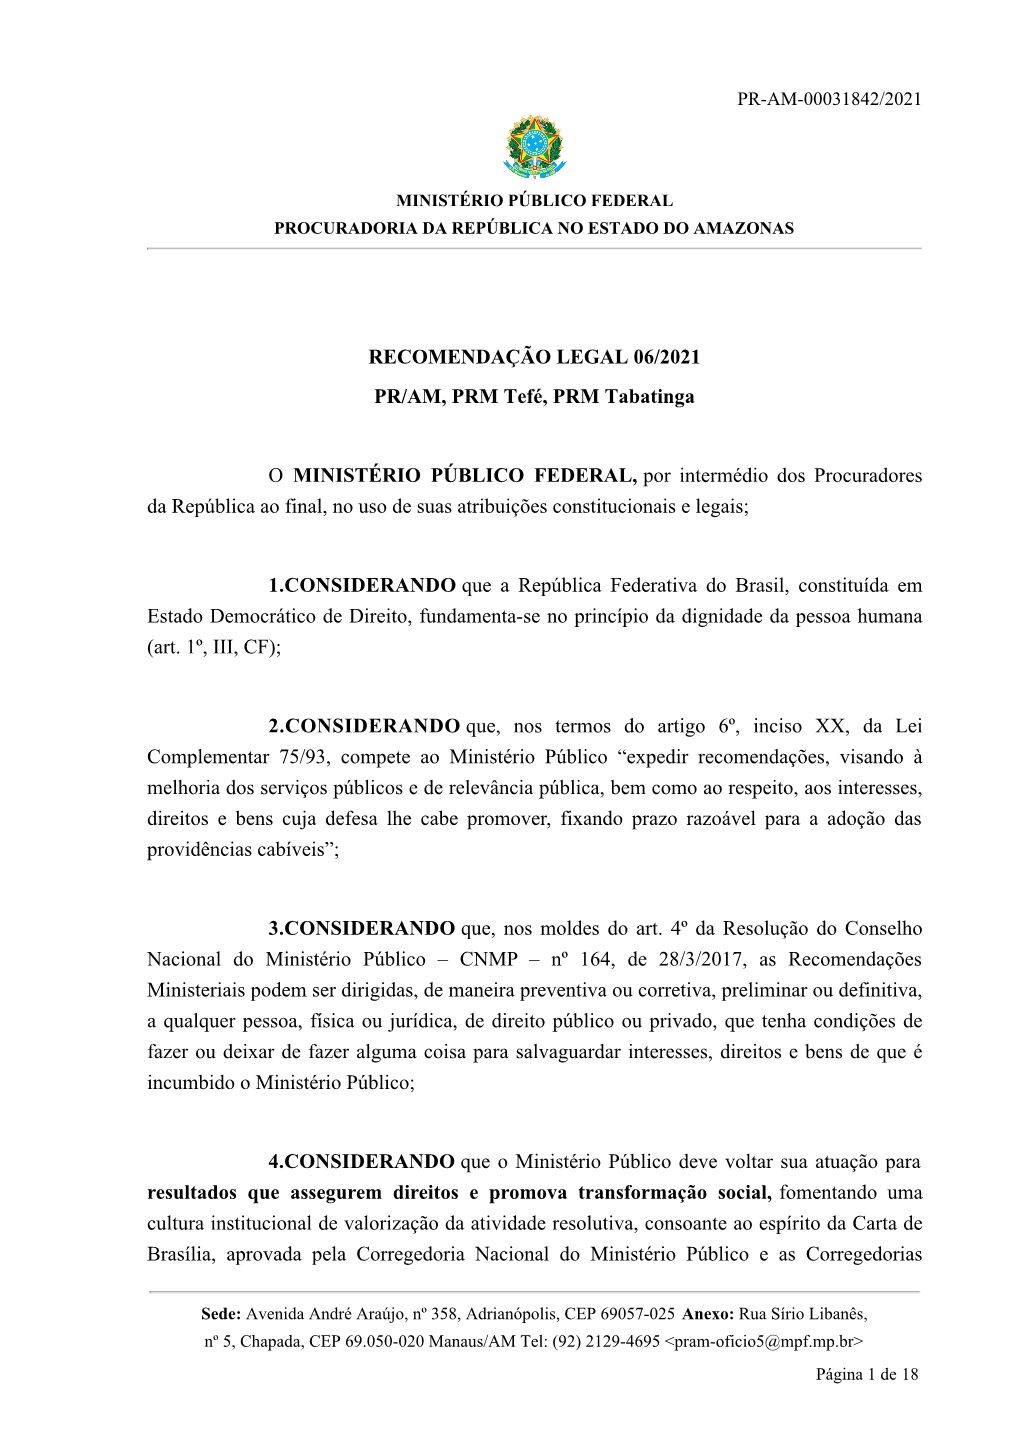 RECOMENDAÇÃO LEGAL 06/2021 PR/AM, PRM Tefé, PRM Tabatinga